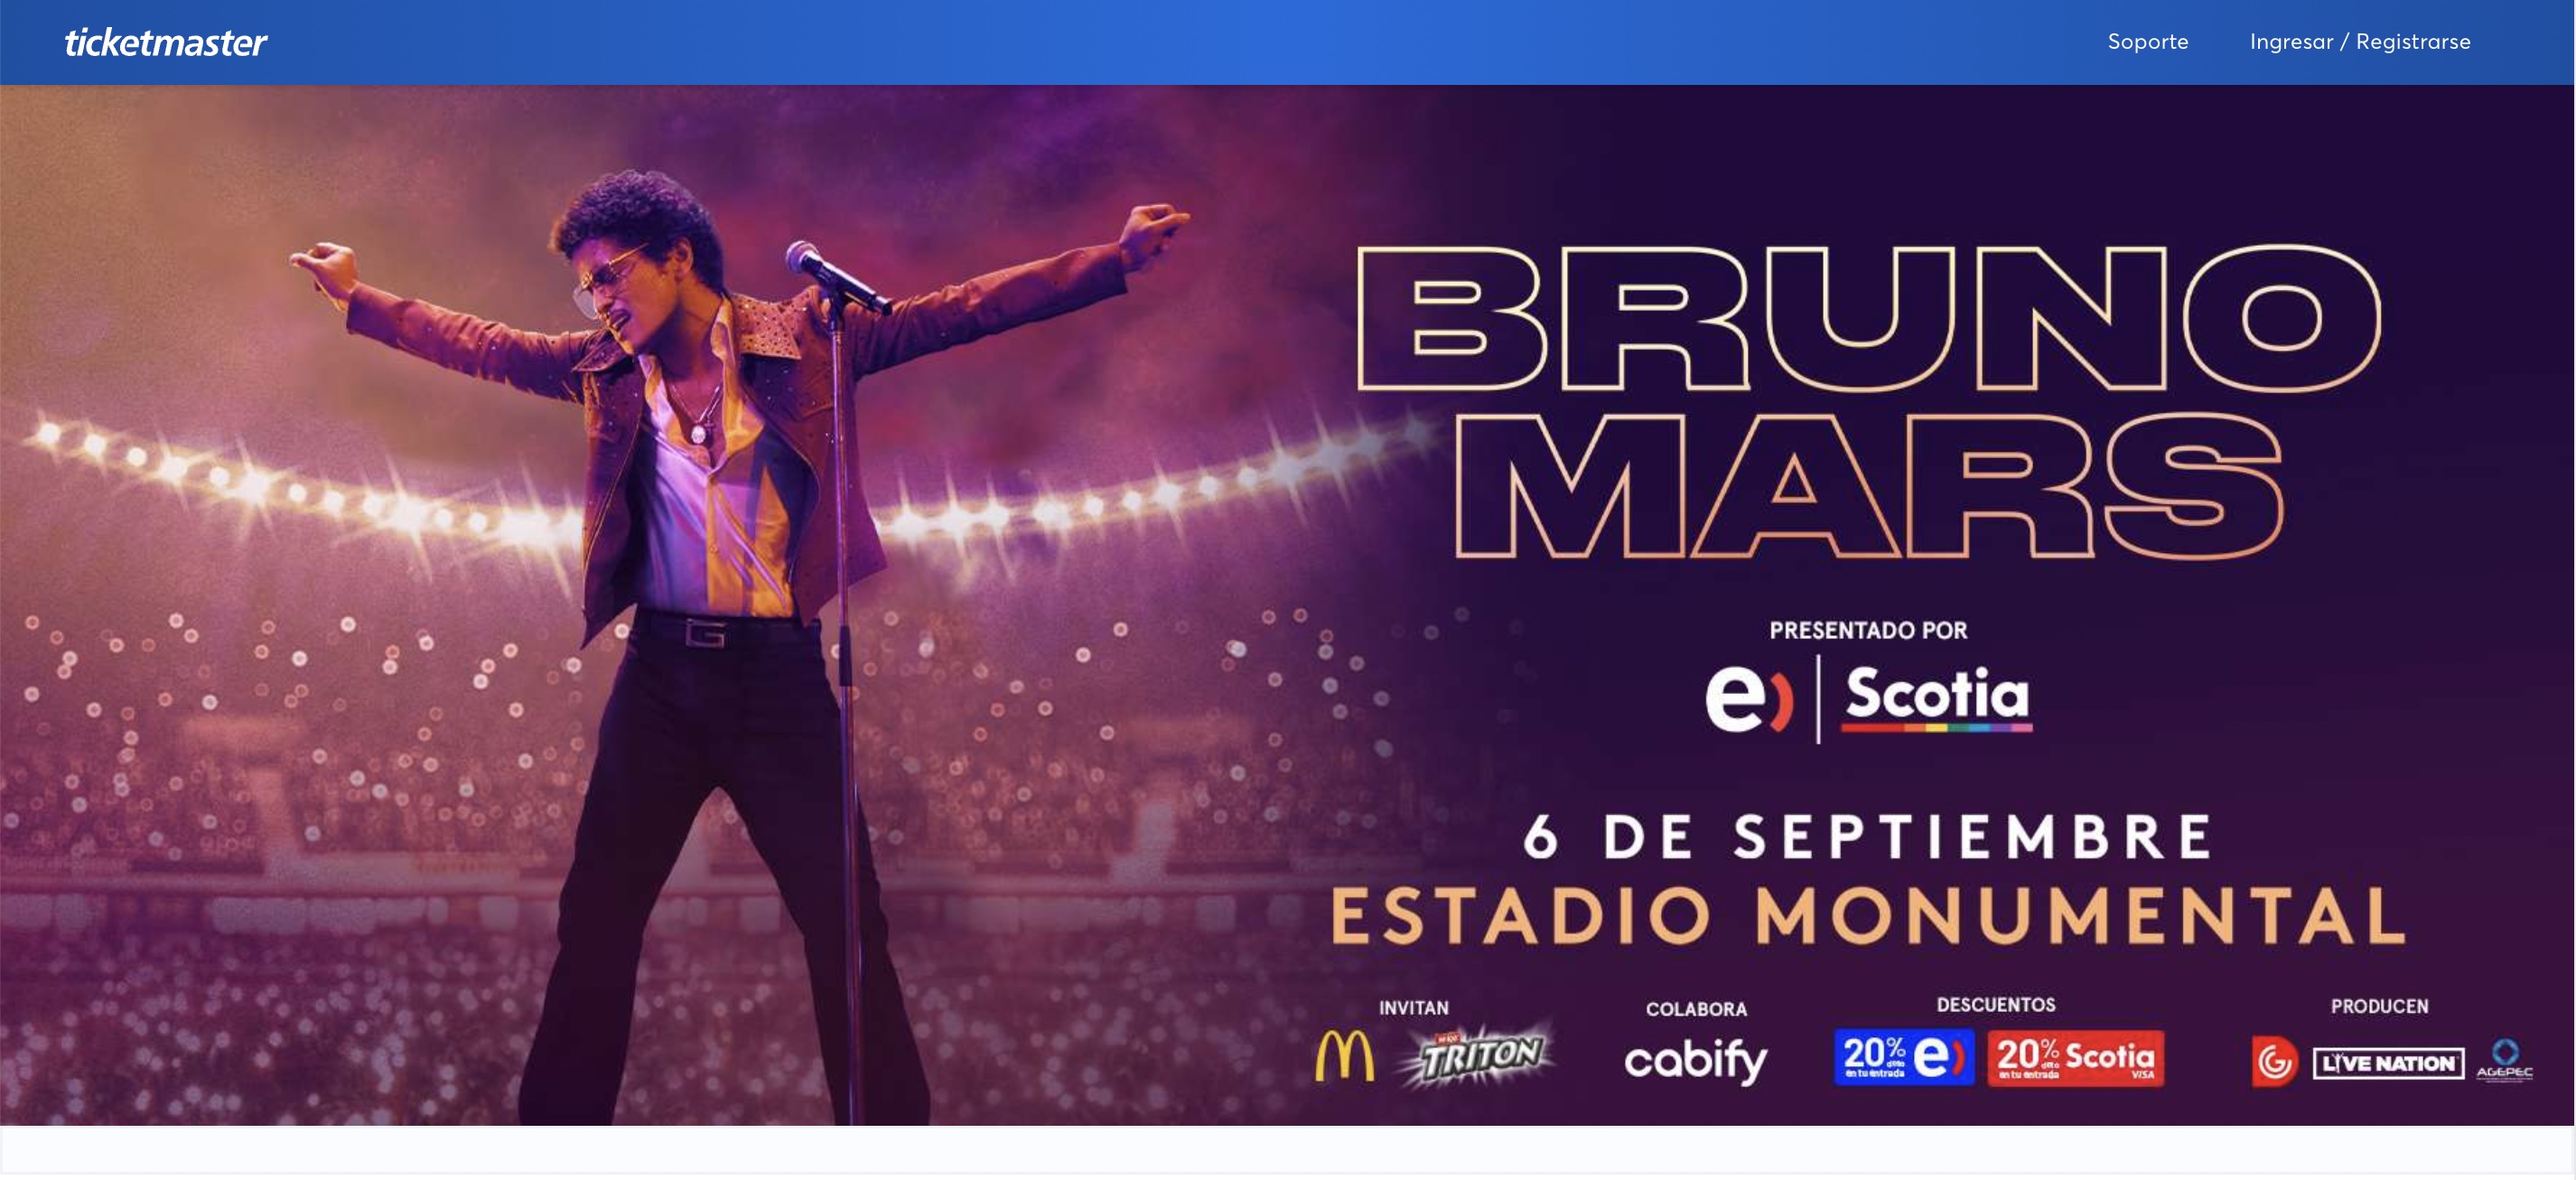 Captura de pantalla de la página de Ticketmaster, en la sección de Bruno Mars,